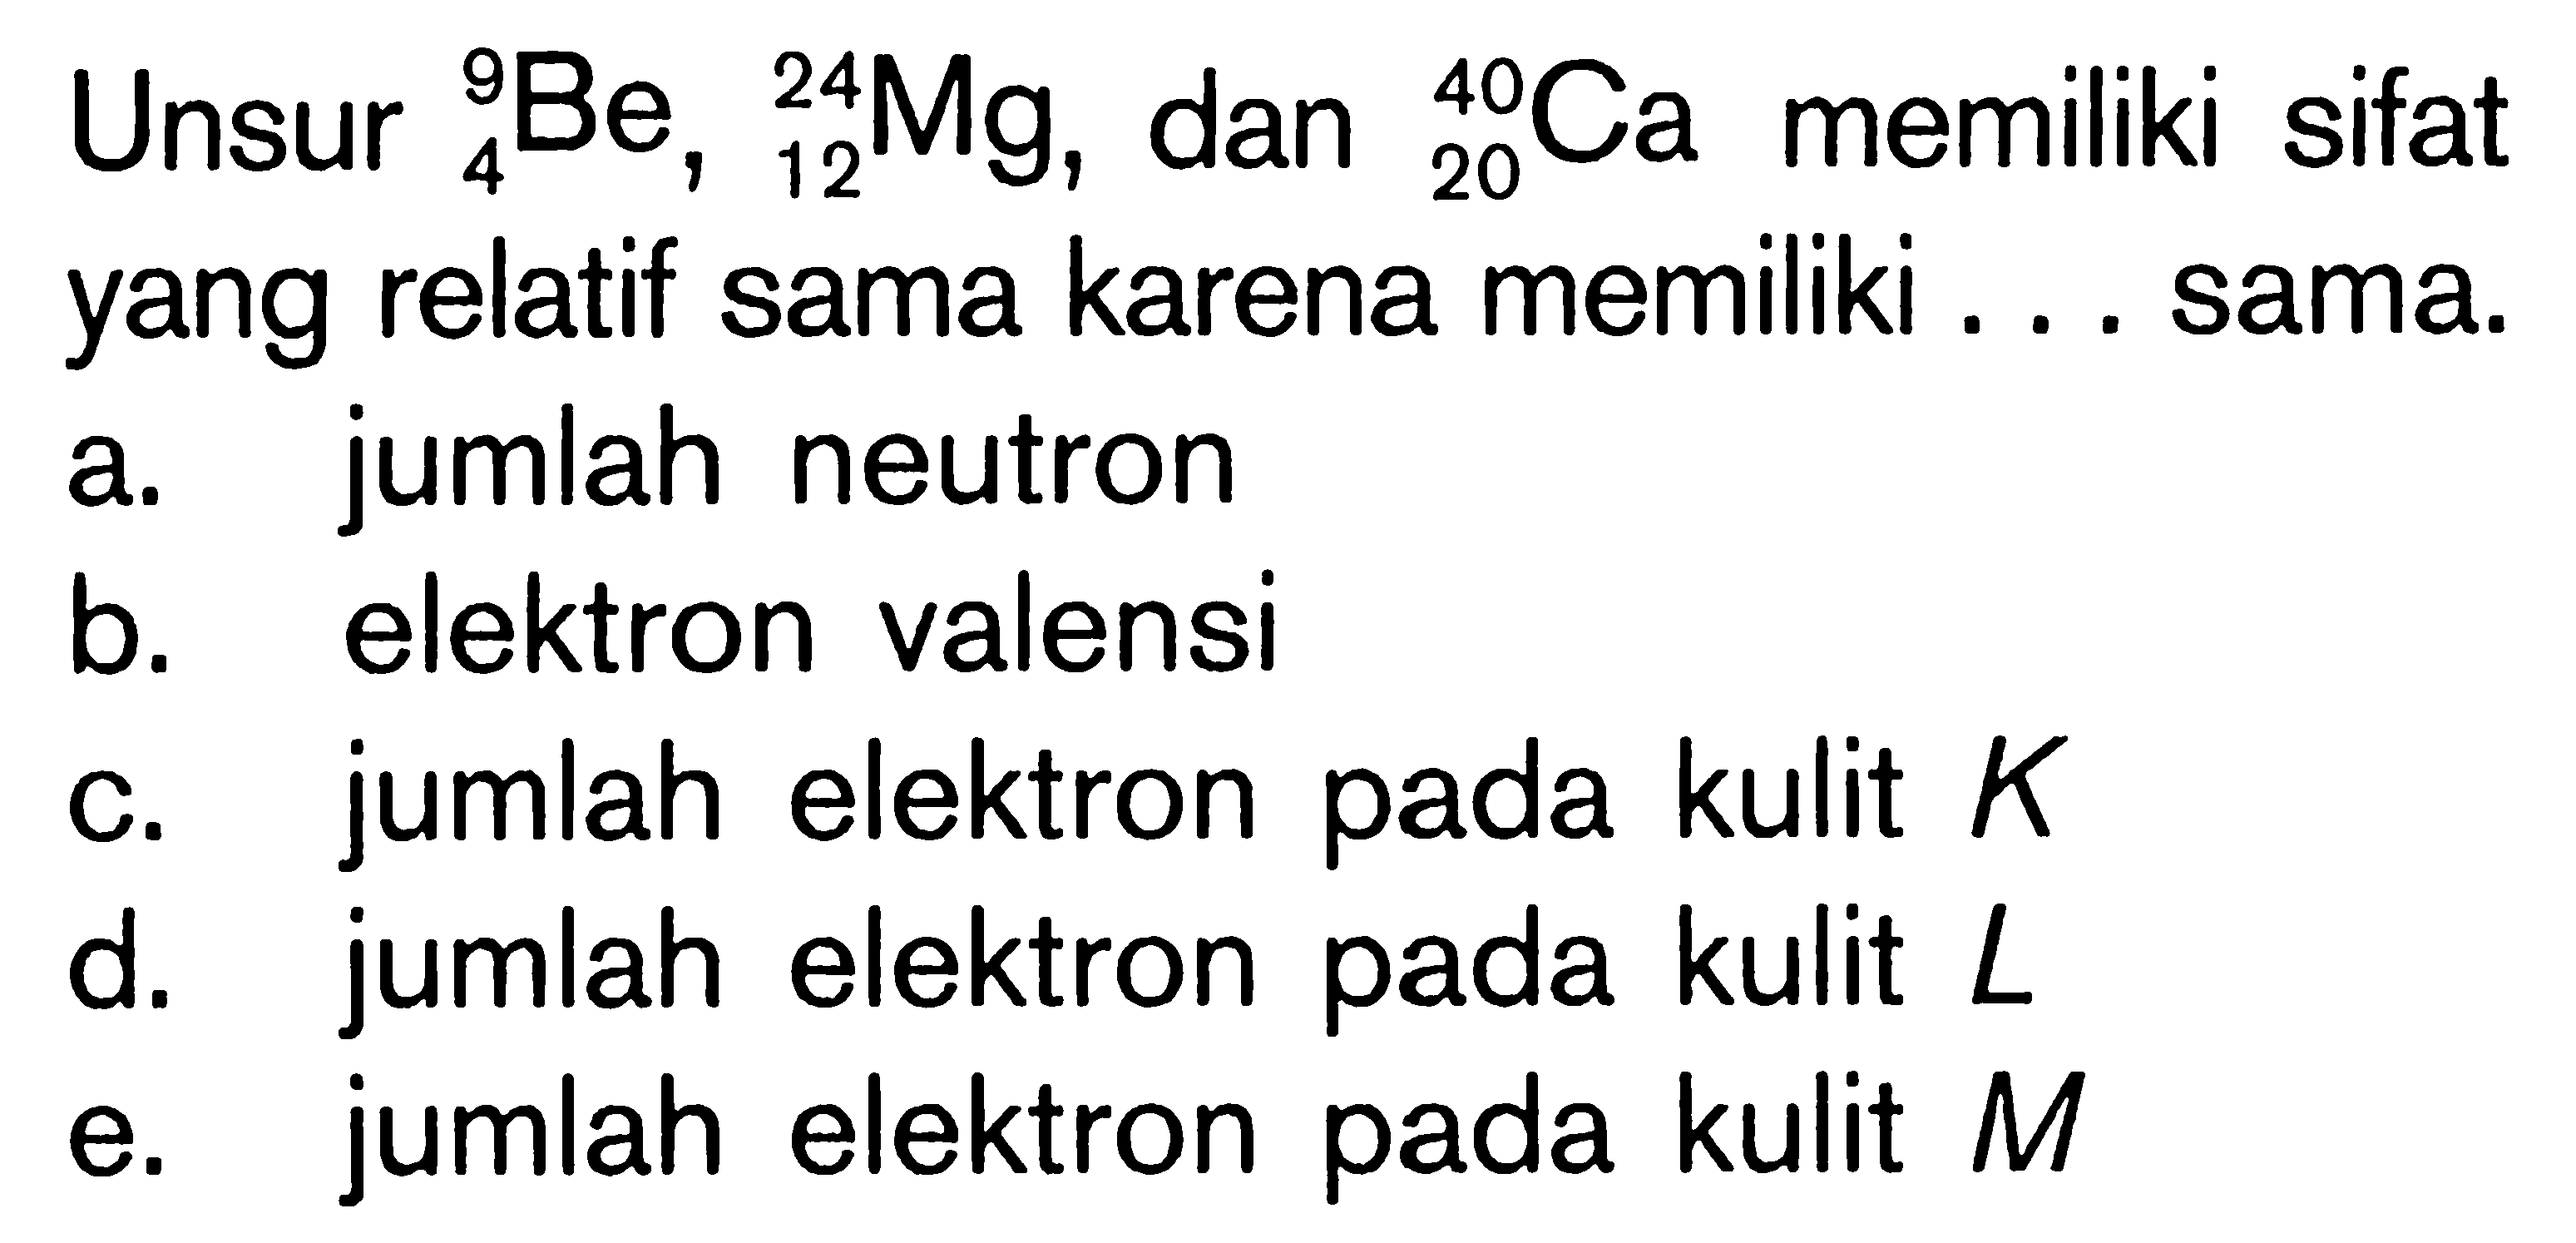 Unsur 9 4 Be 22 12 Mg, dan 40 20 Ca memiliki sifat yang relatif sama karena memiliki sama.